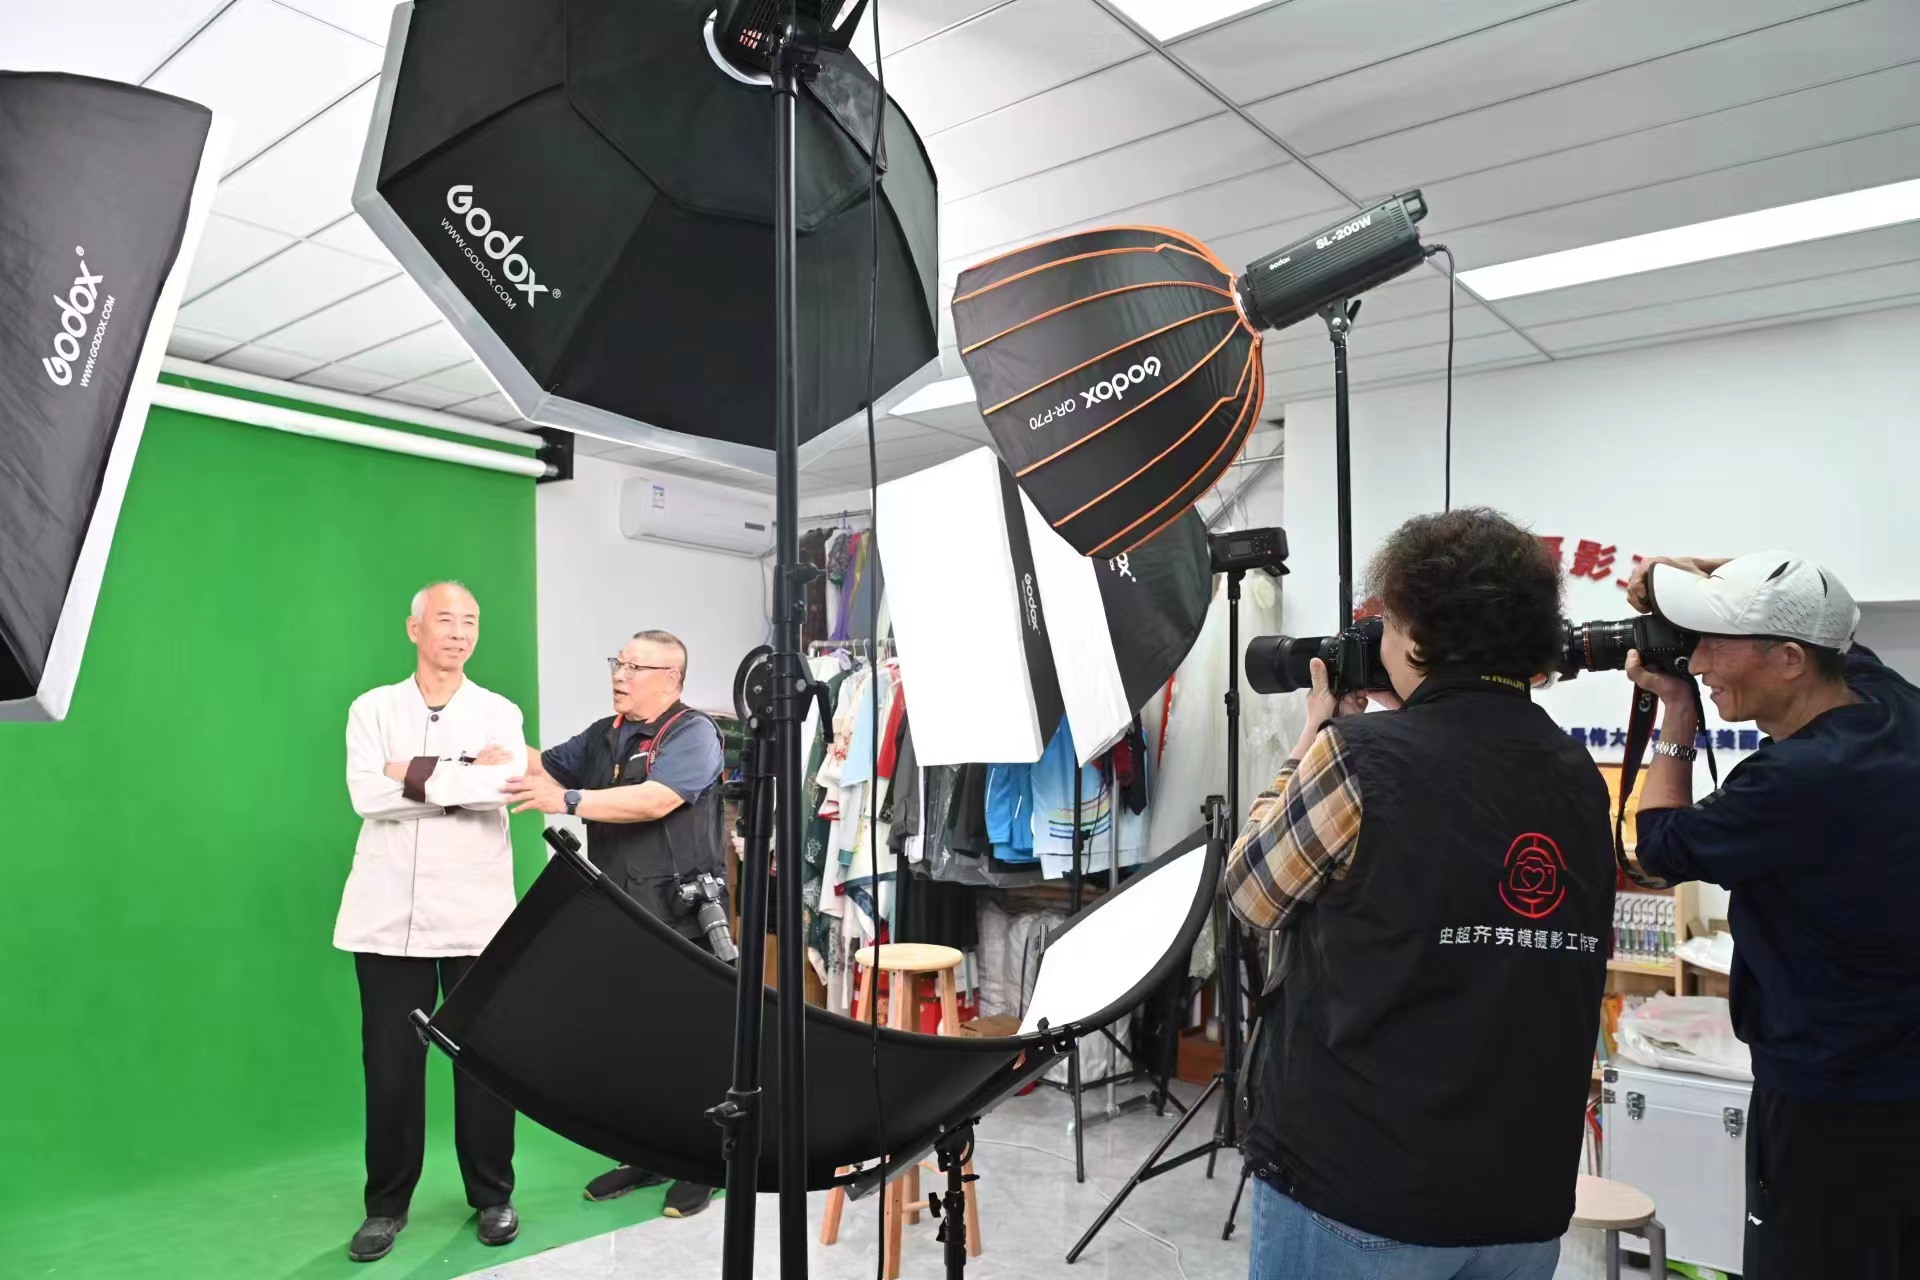 史超齊帶領他的誌願者團隊免費為一線勞動者拍攝「微笑肖像照」。  新京報記者 王飛 攝